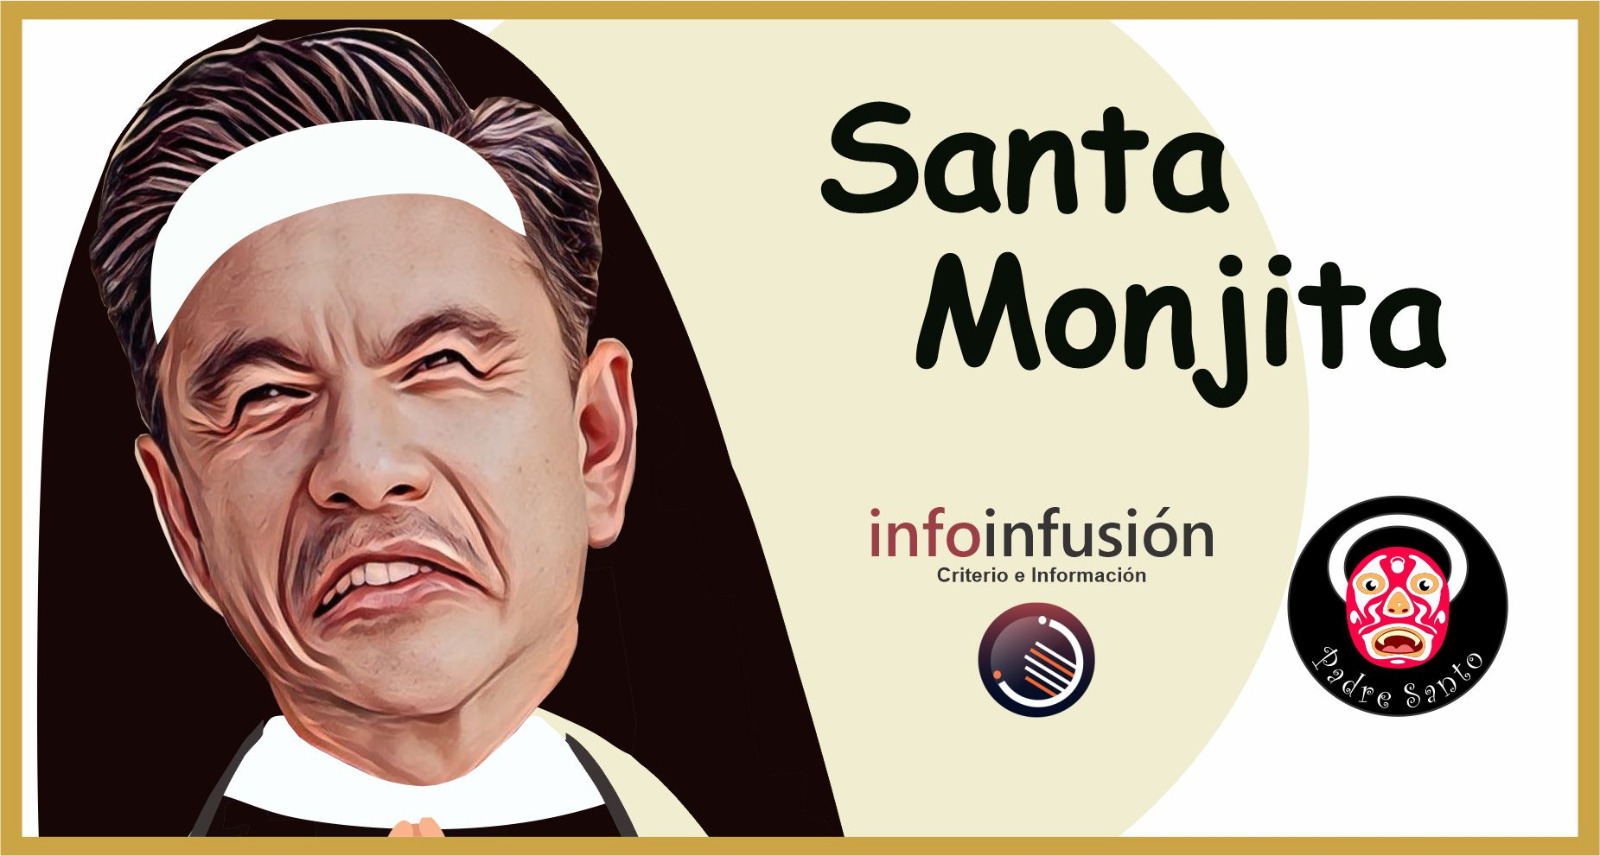 Santa Monjita / por Padre Santo, monero de bien, trazando para Infoinfusión